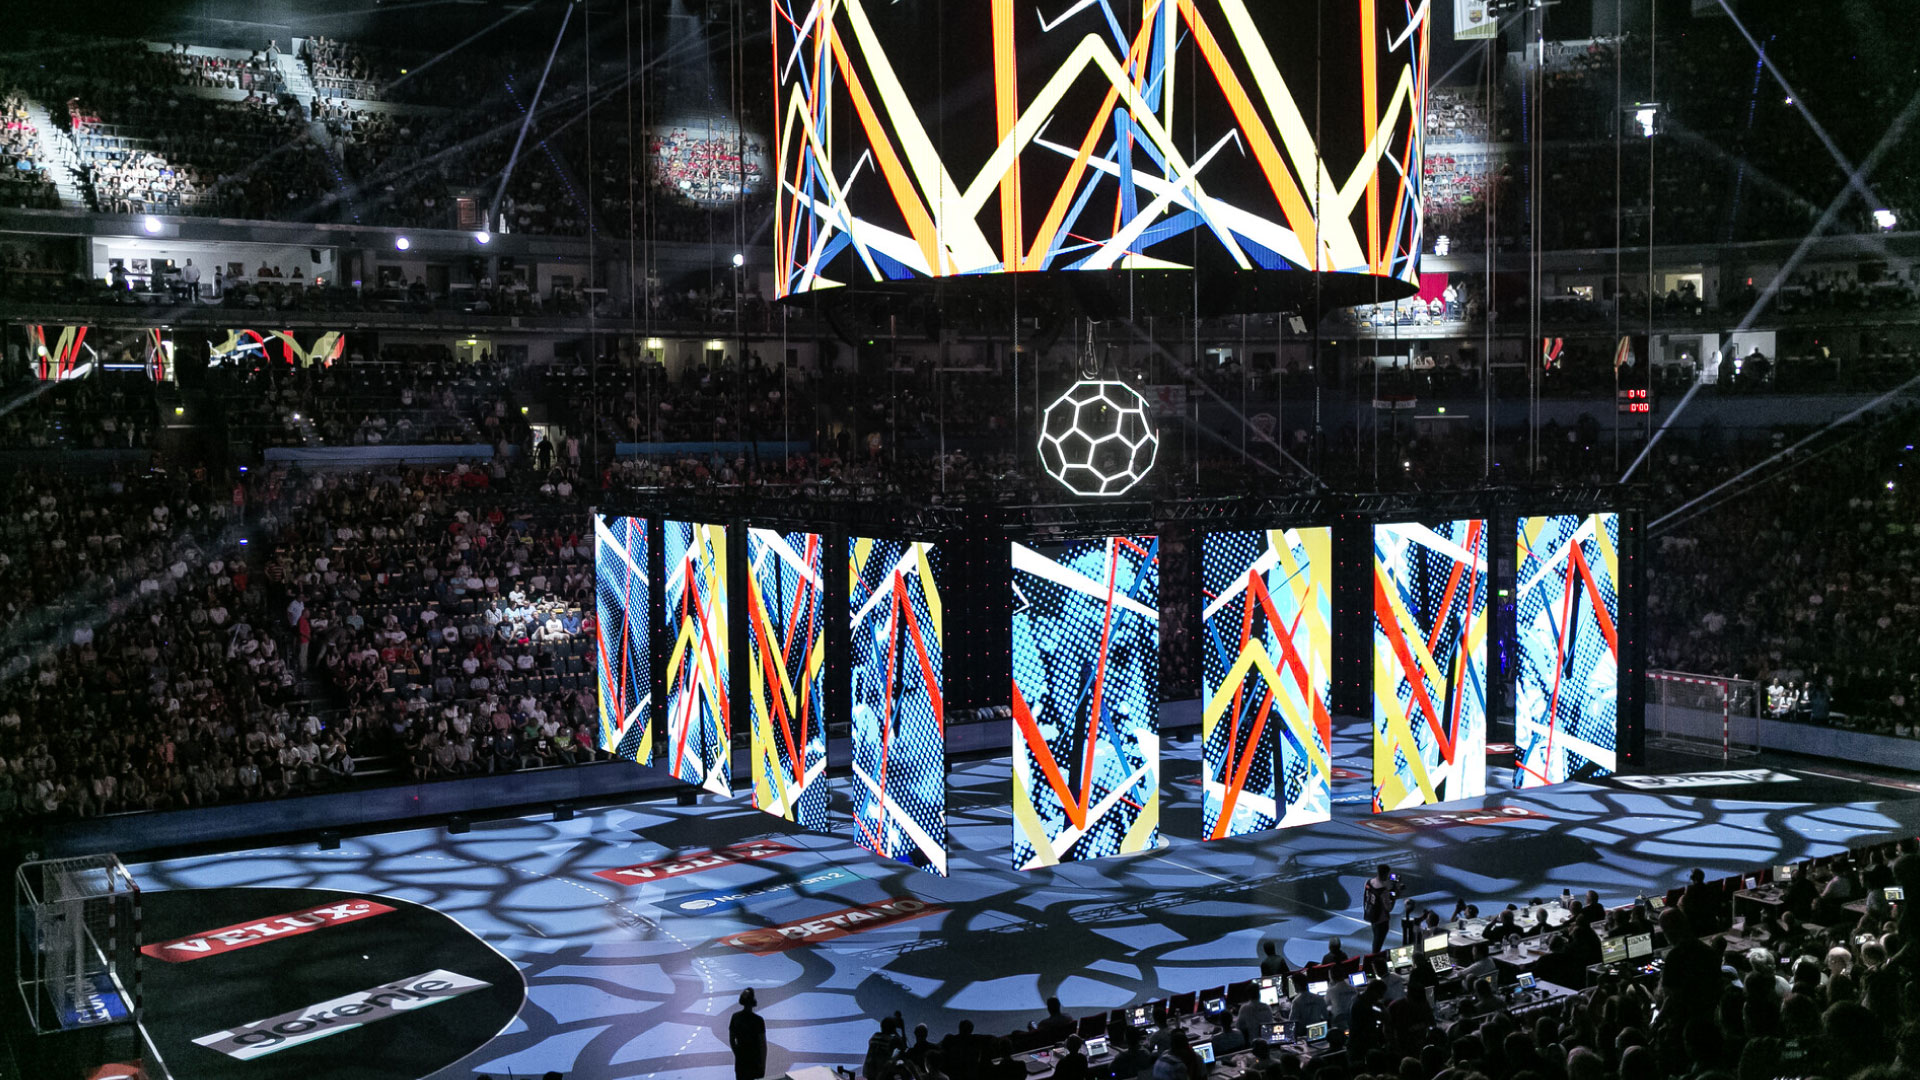 Finale van de Europese Handbal Champions League, gehouden in Keulen, Lanxess Arena. PRG leverde LED Schermen voor dit evenement.